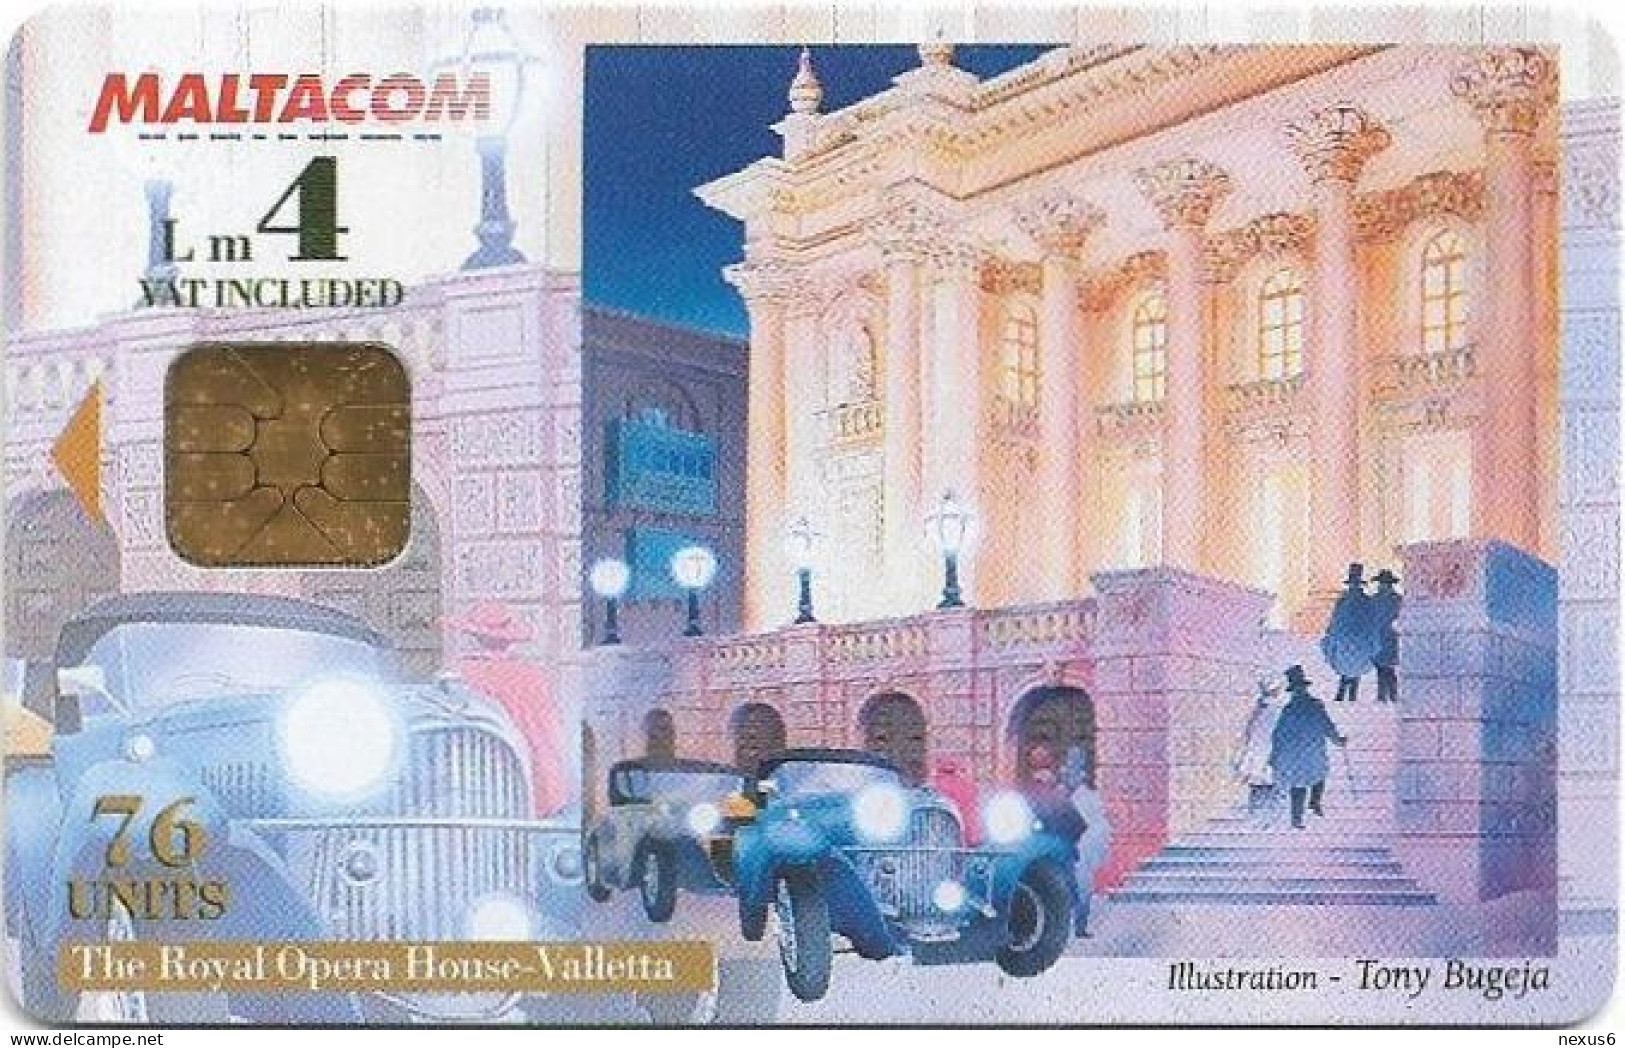 Malta - Maltacom - Royal Opera House, 11.2000, 76U, 15.000ex, Used - Malte